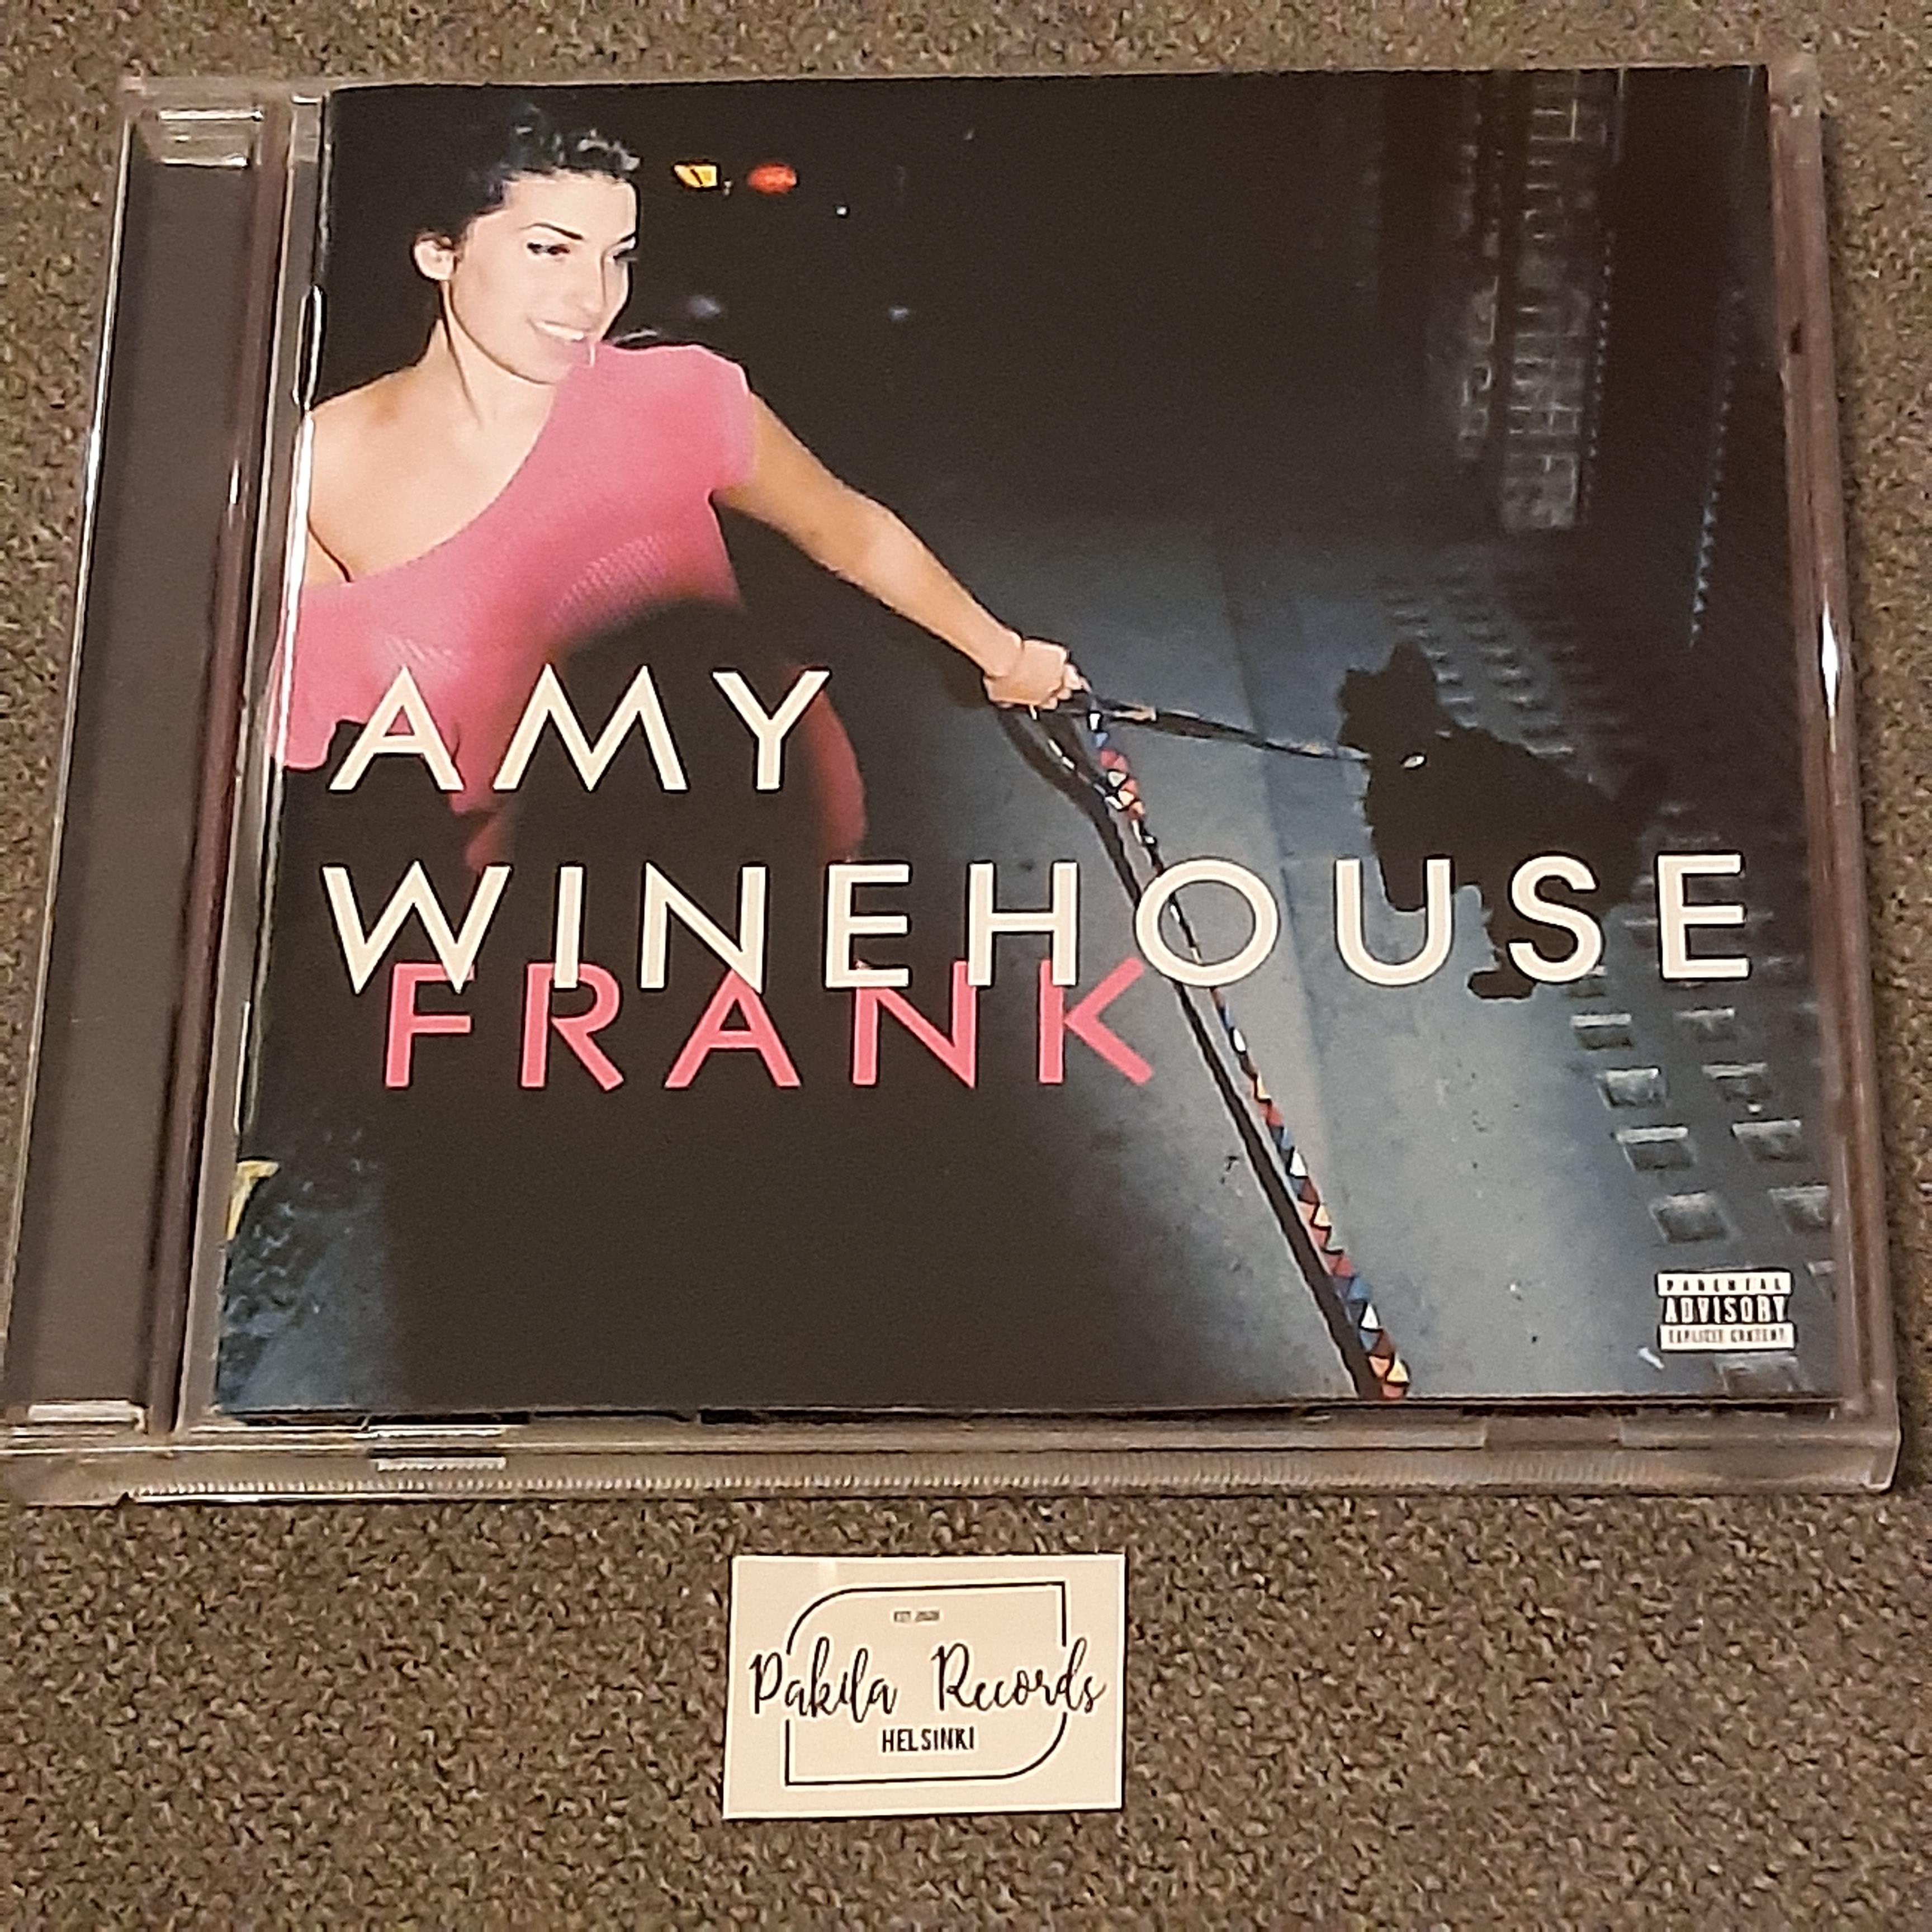 Amy Winehouse - Frank - CD (käytetty)